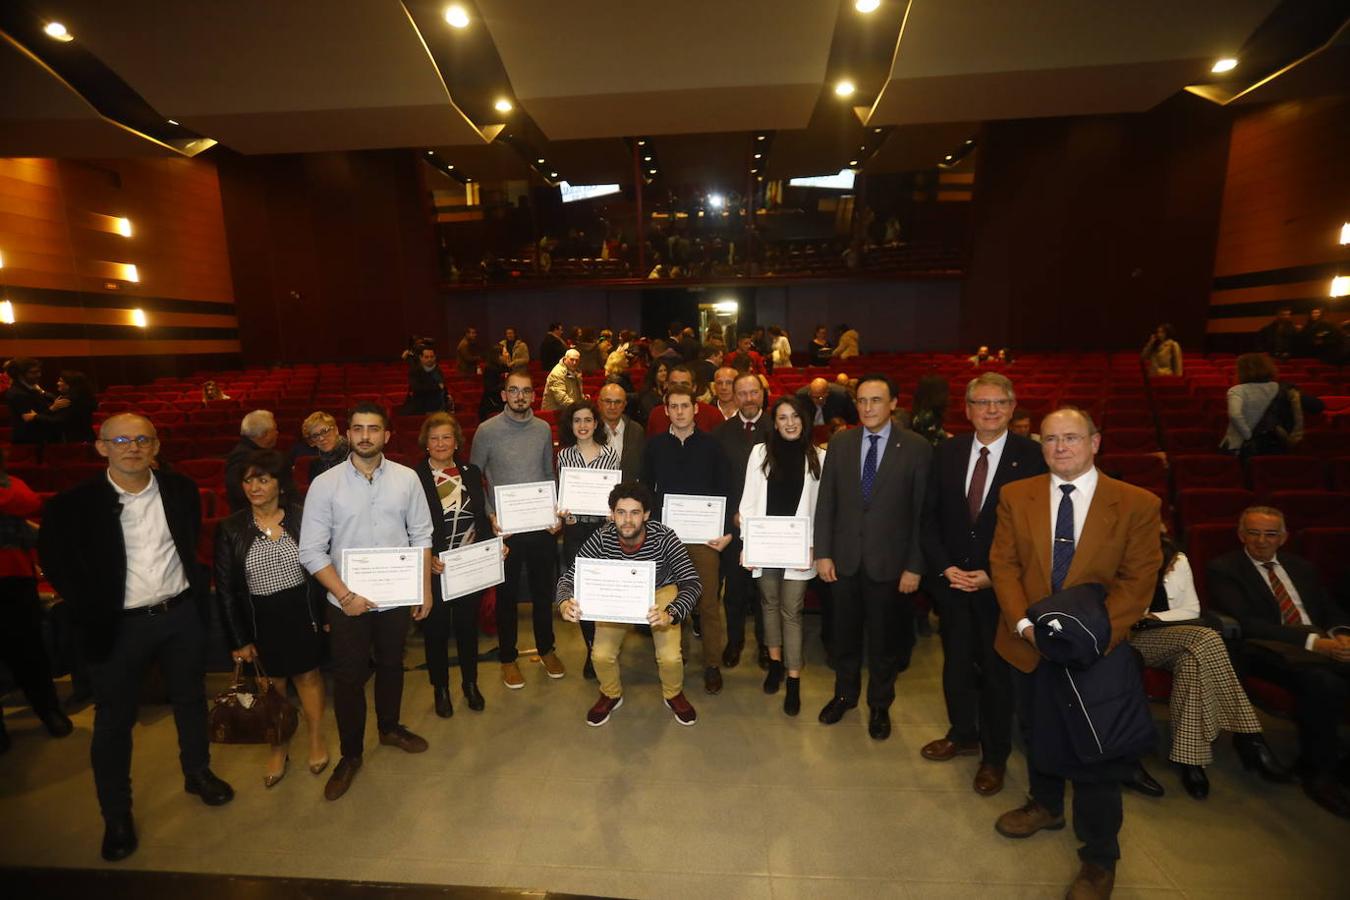 Los premios de la Fundación Caja Rural del Sur de Córdoba, en imágenes